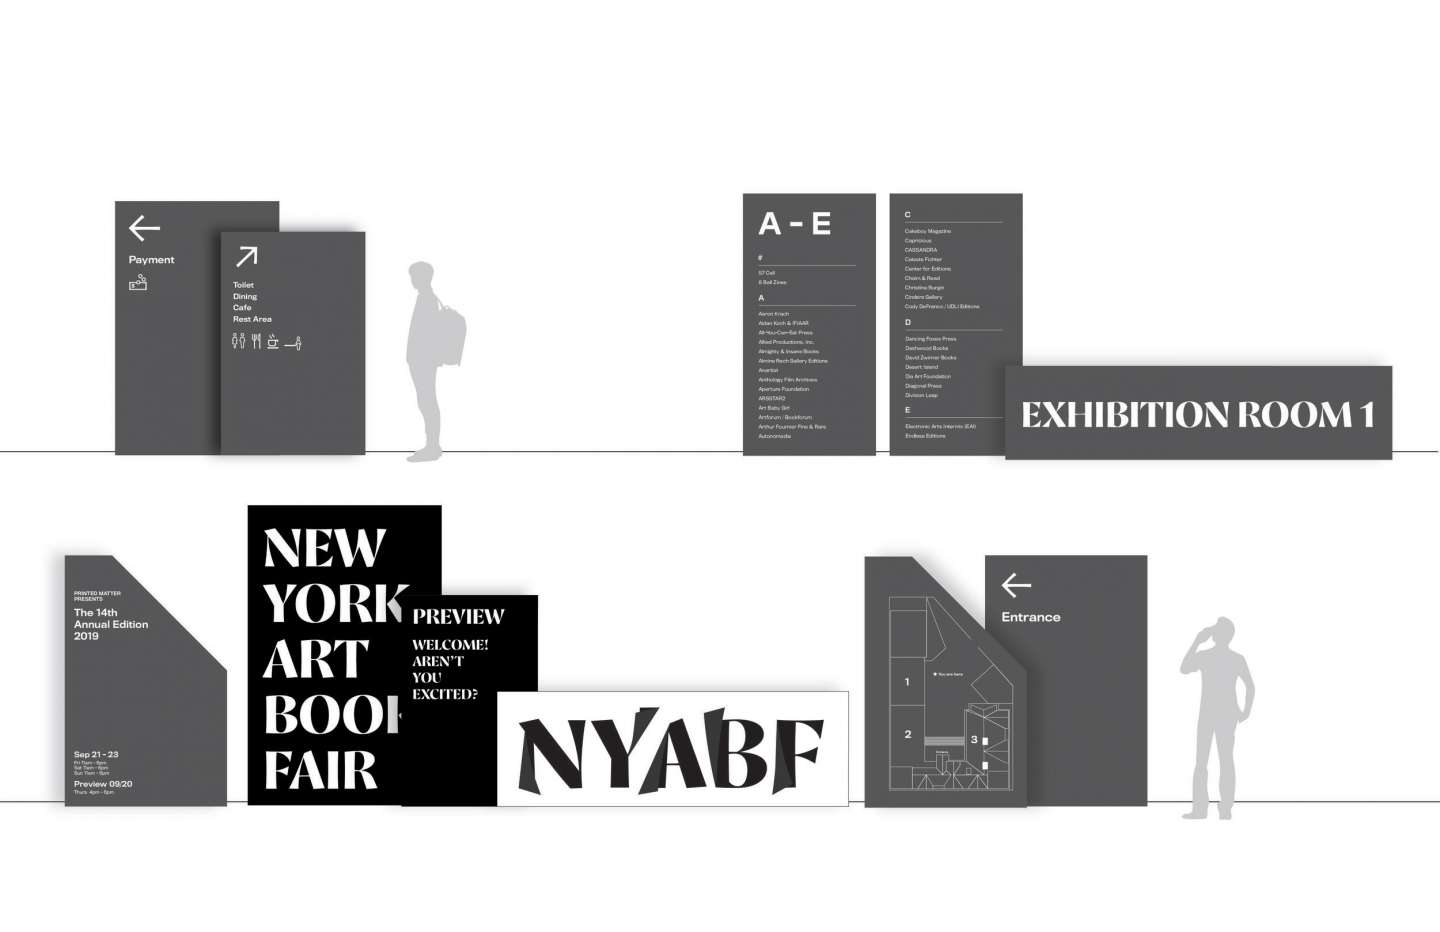 New York Art Book Fair (NYABF)